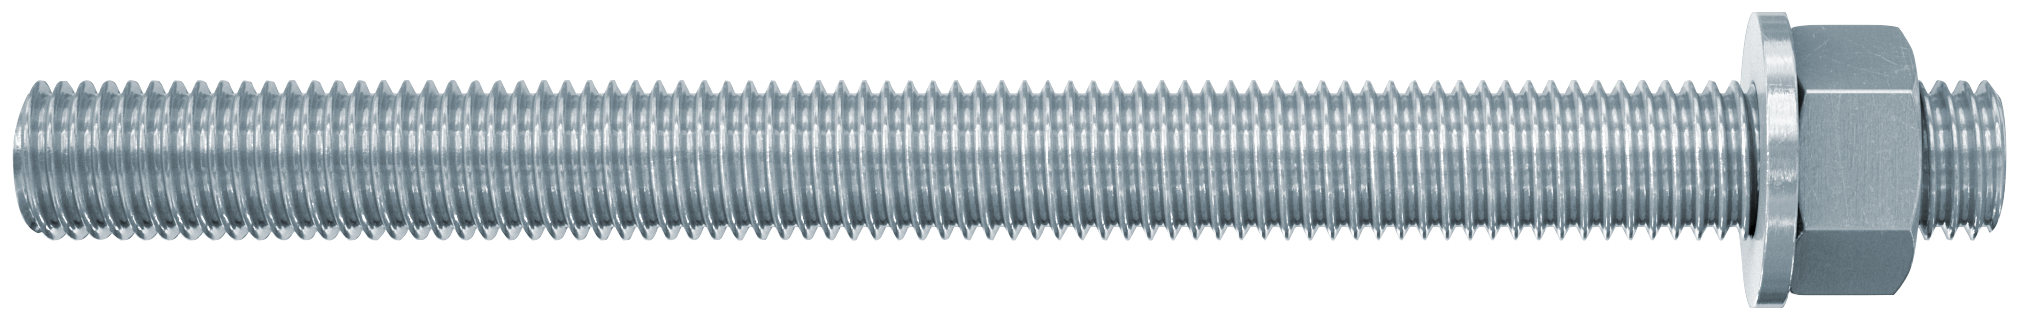 fischer Barre filettate in acciaio FIS A M12X200 cl. 8.8 (1 Pz.) Barra filettata in acciaio zincato con classe di resistenza 8.8, con taglio dritto, dado e rosetta.